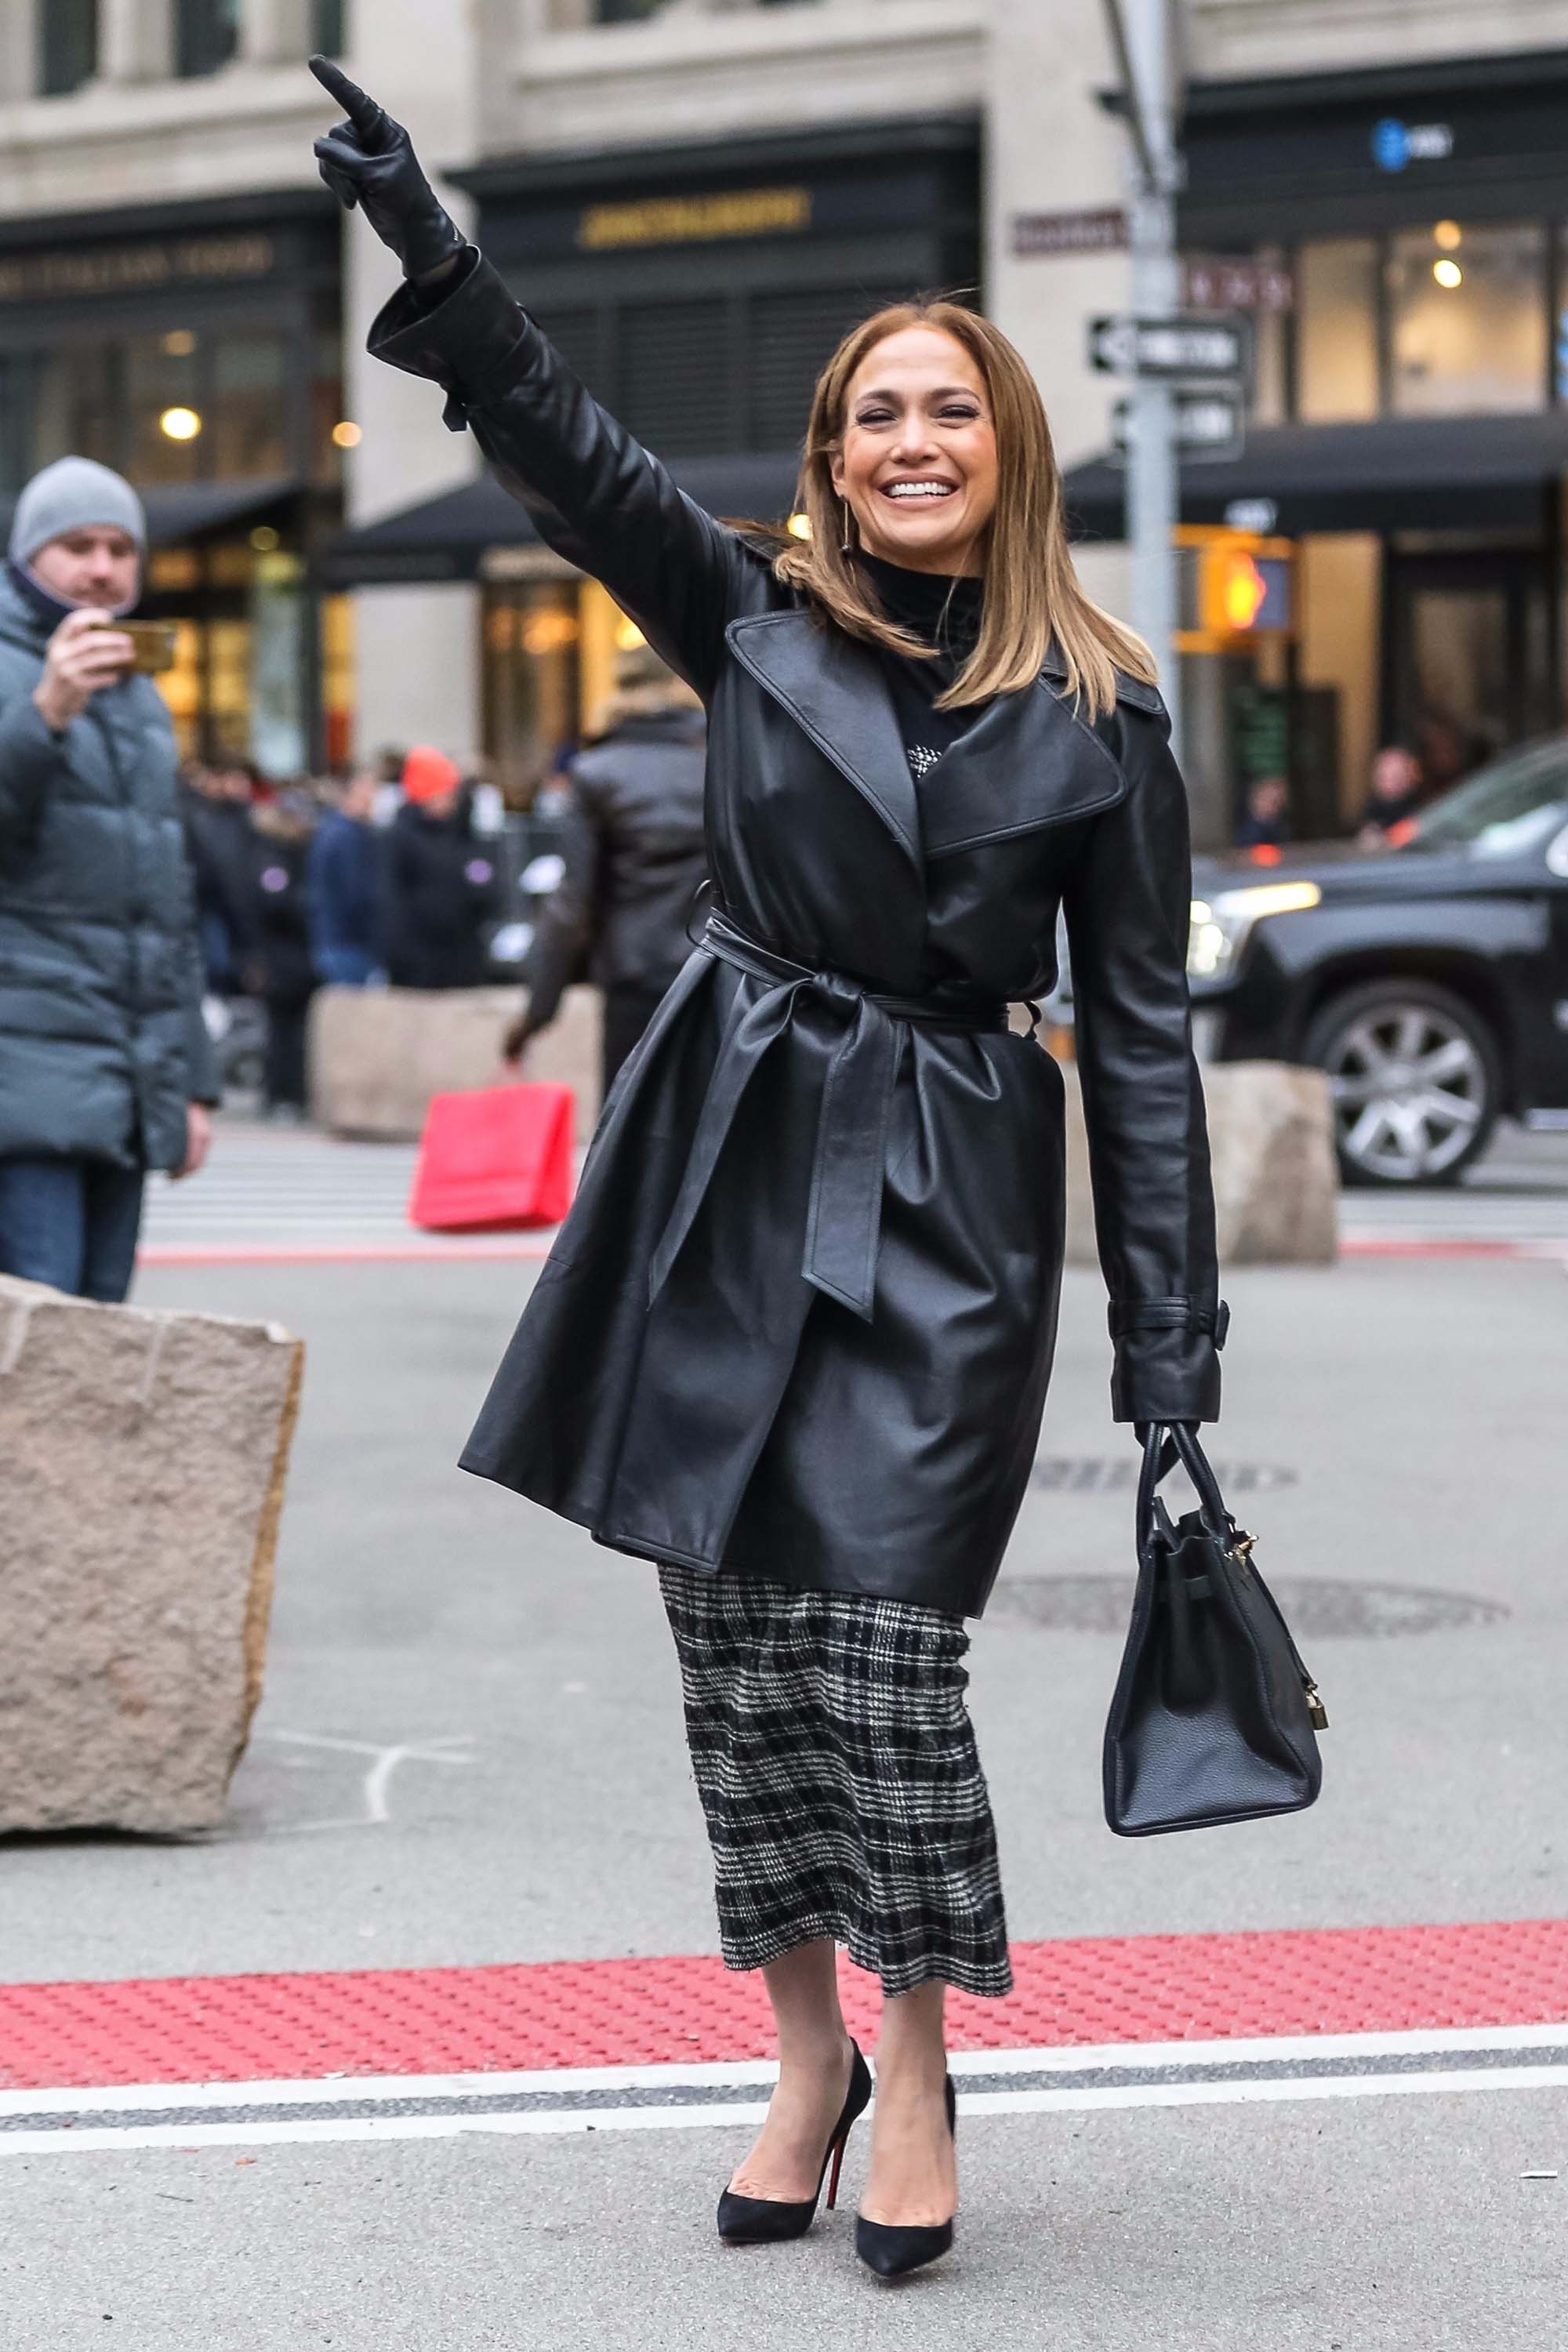 Jennifer Lopez is seen in NYC